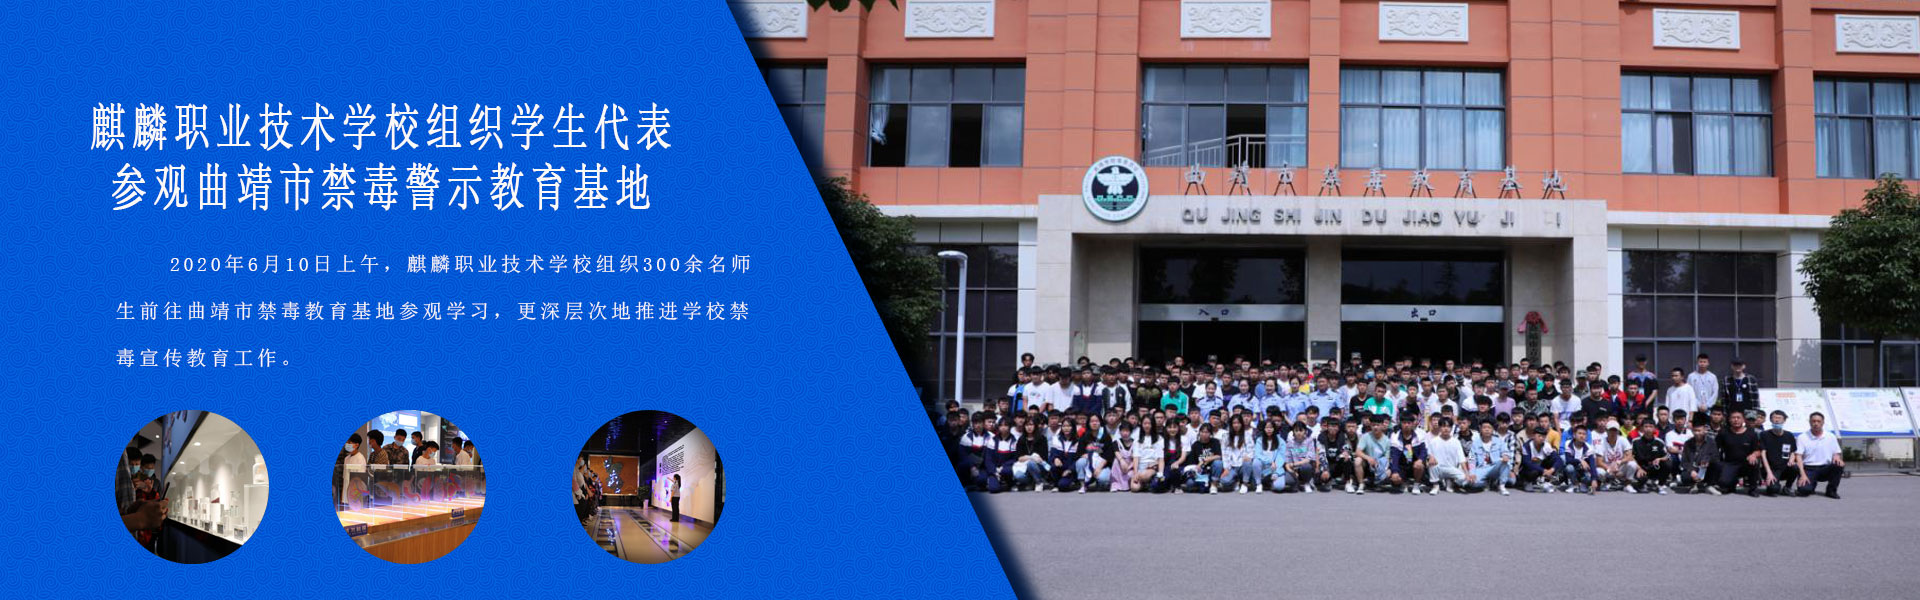 麒麟职业技术学校组织学生代表参观曲靖市禁毒警示教育基地